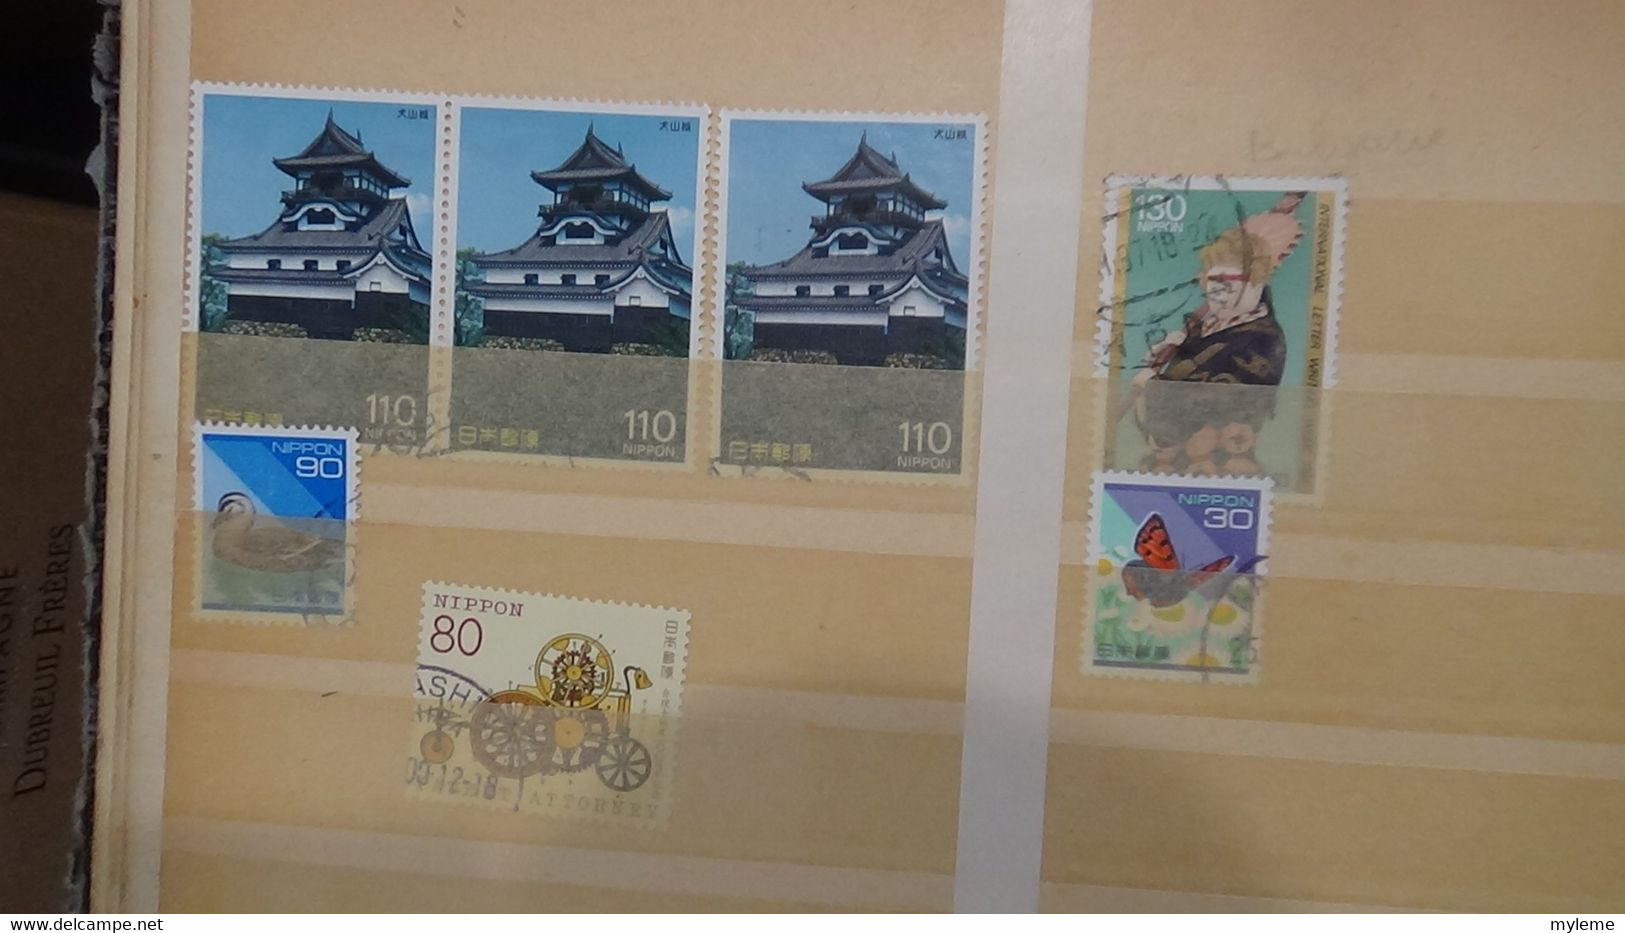 AG14 Collection  du Japon en timbres oblitérés Côte 2195 euros ...  A saisir !!!